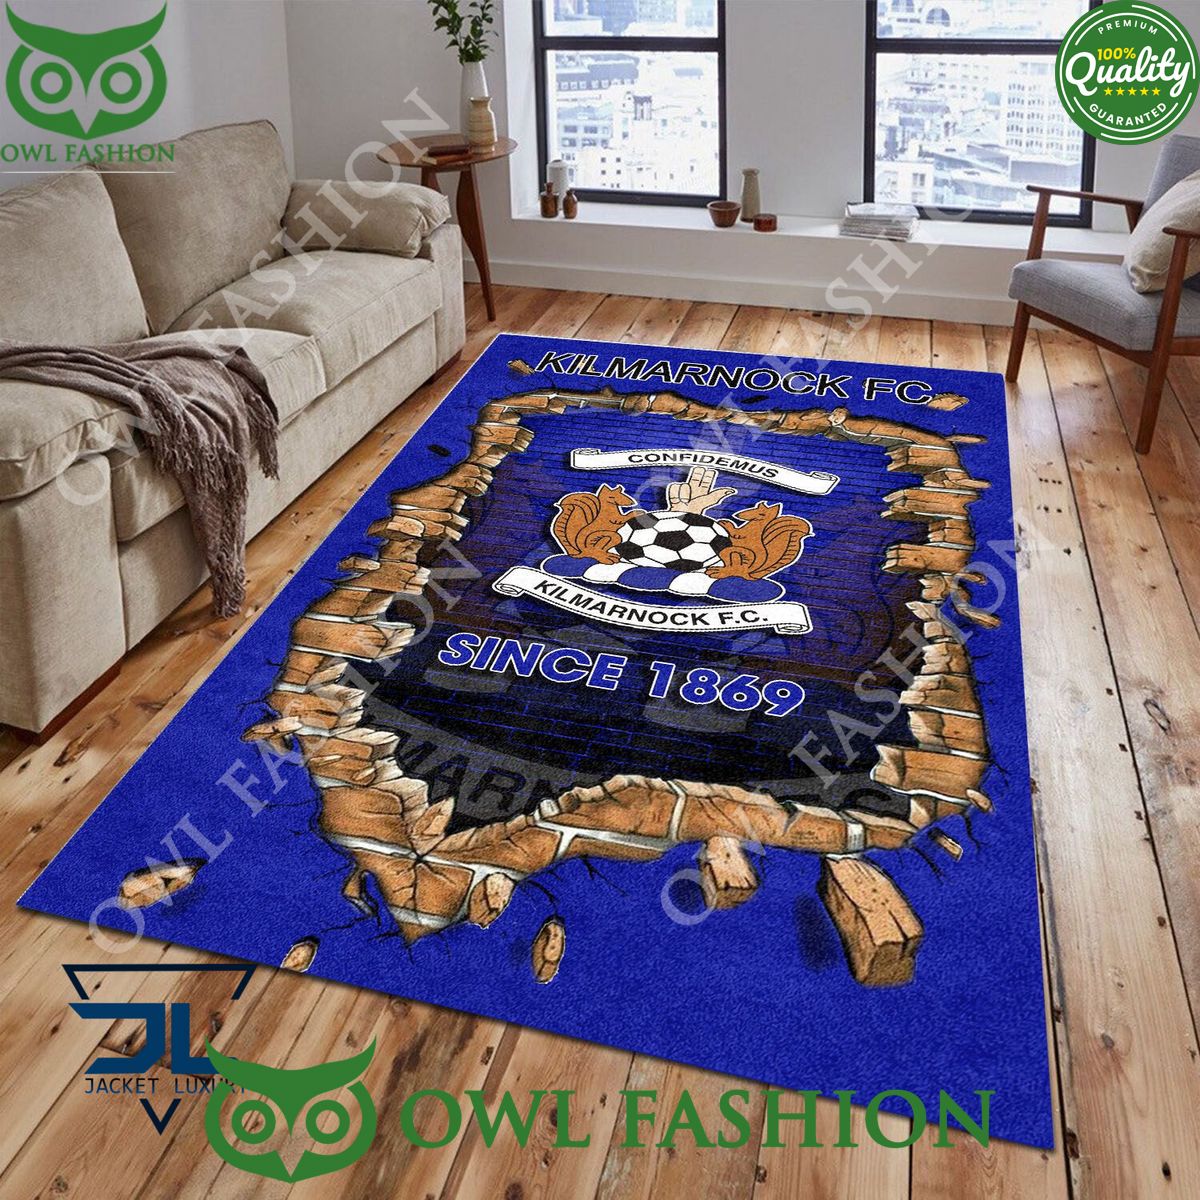 Kilmarnock F.C. 1785 Scottish Broken Wall Living Room Carpet